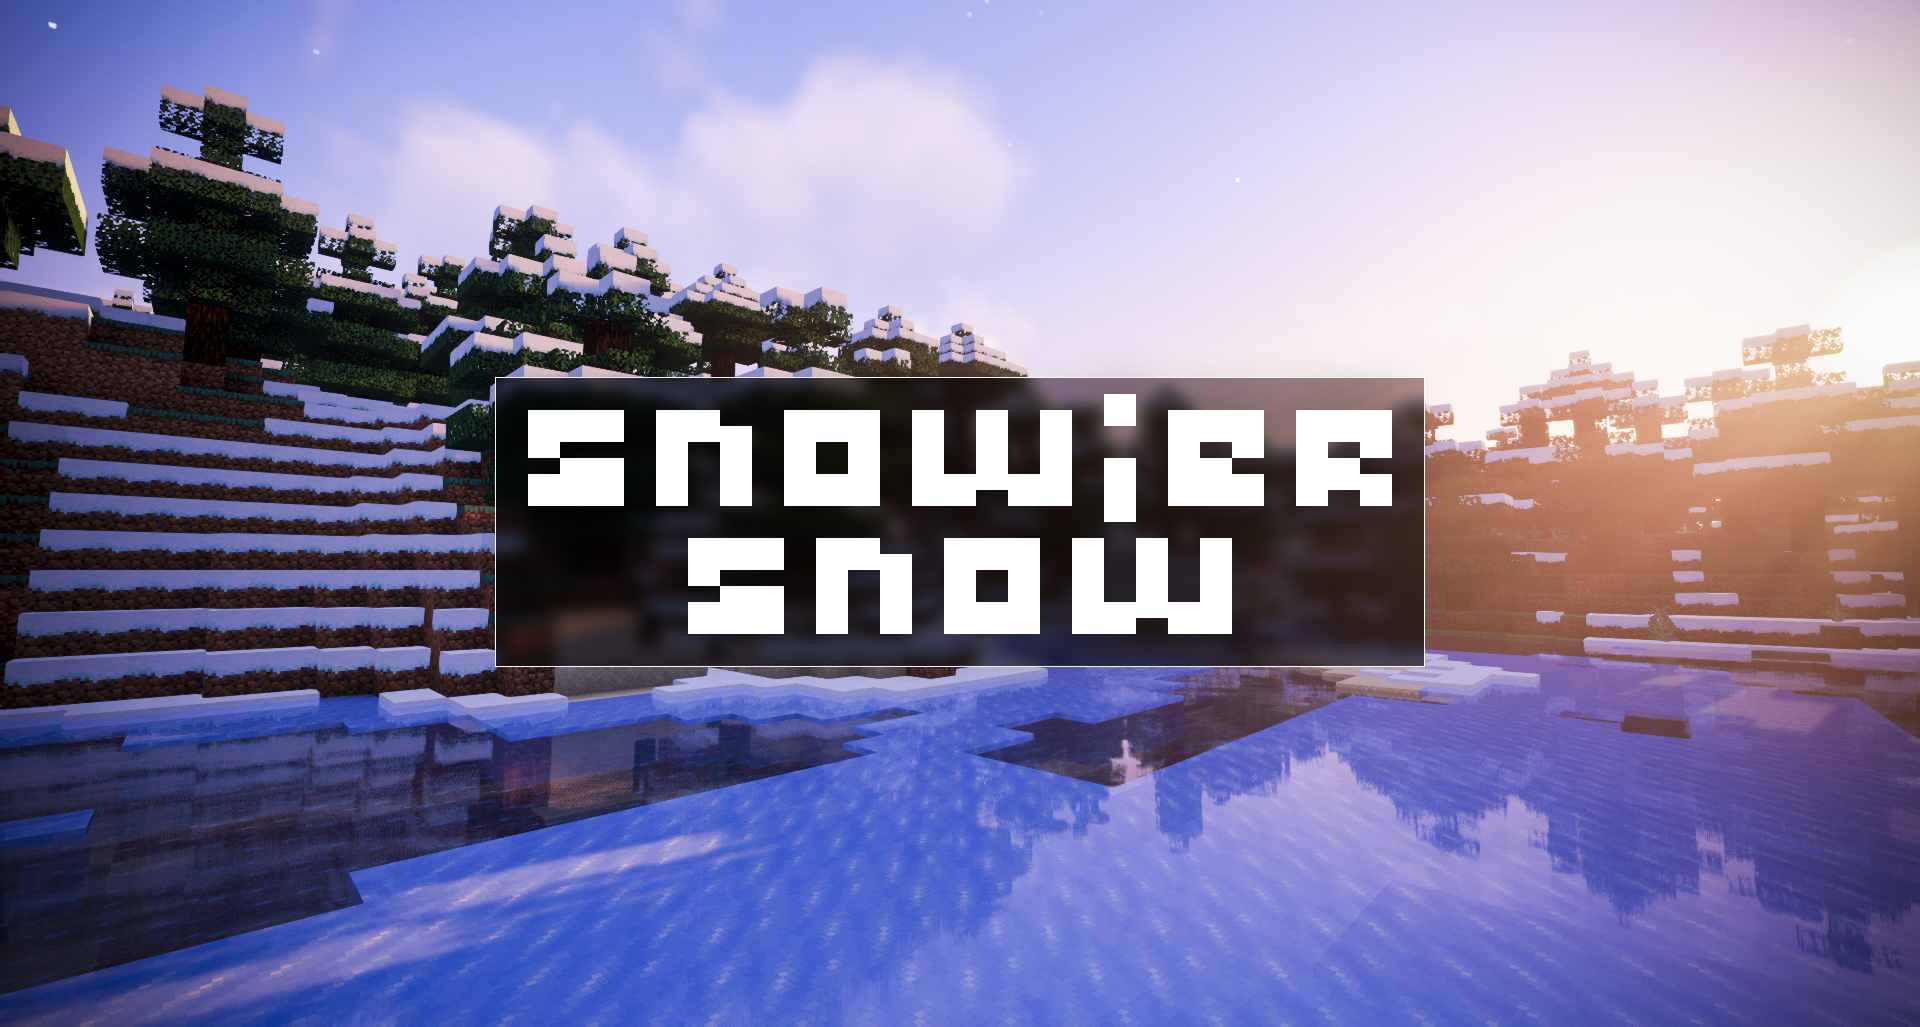 Snowier Snow screenshot 1